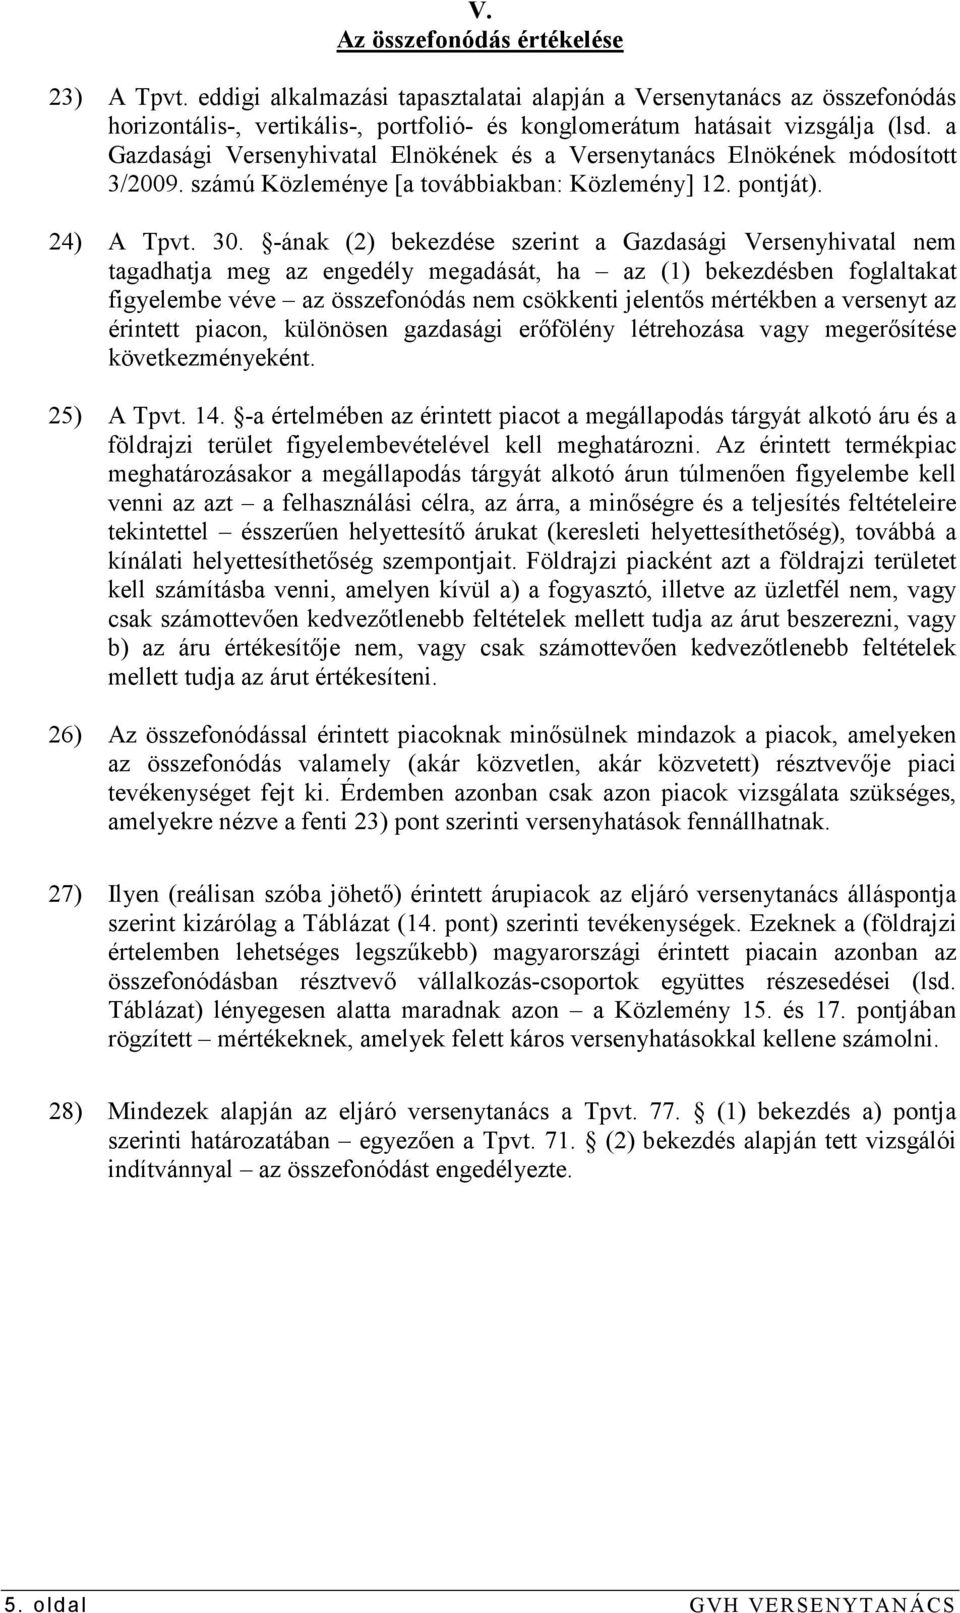 -ának (2) bekezdése szerint a Gazdasági Versenyhivatal nem tagadhatja meg az engedély megadását, ha az (1) bekezdésben foglaltakat figyelembe véve az összefonódás nem csökkenti jelentıs mértékben a